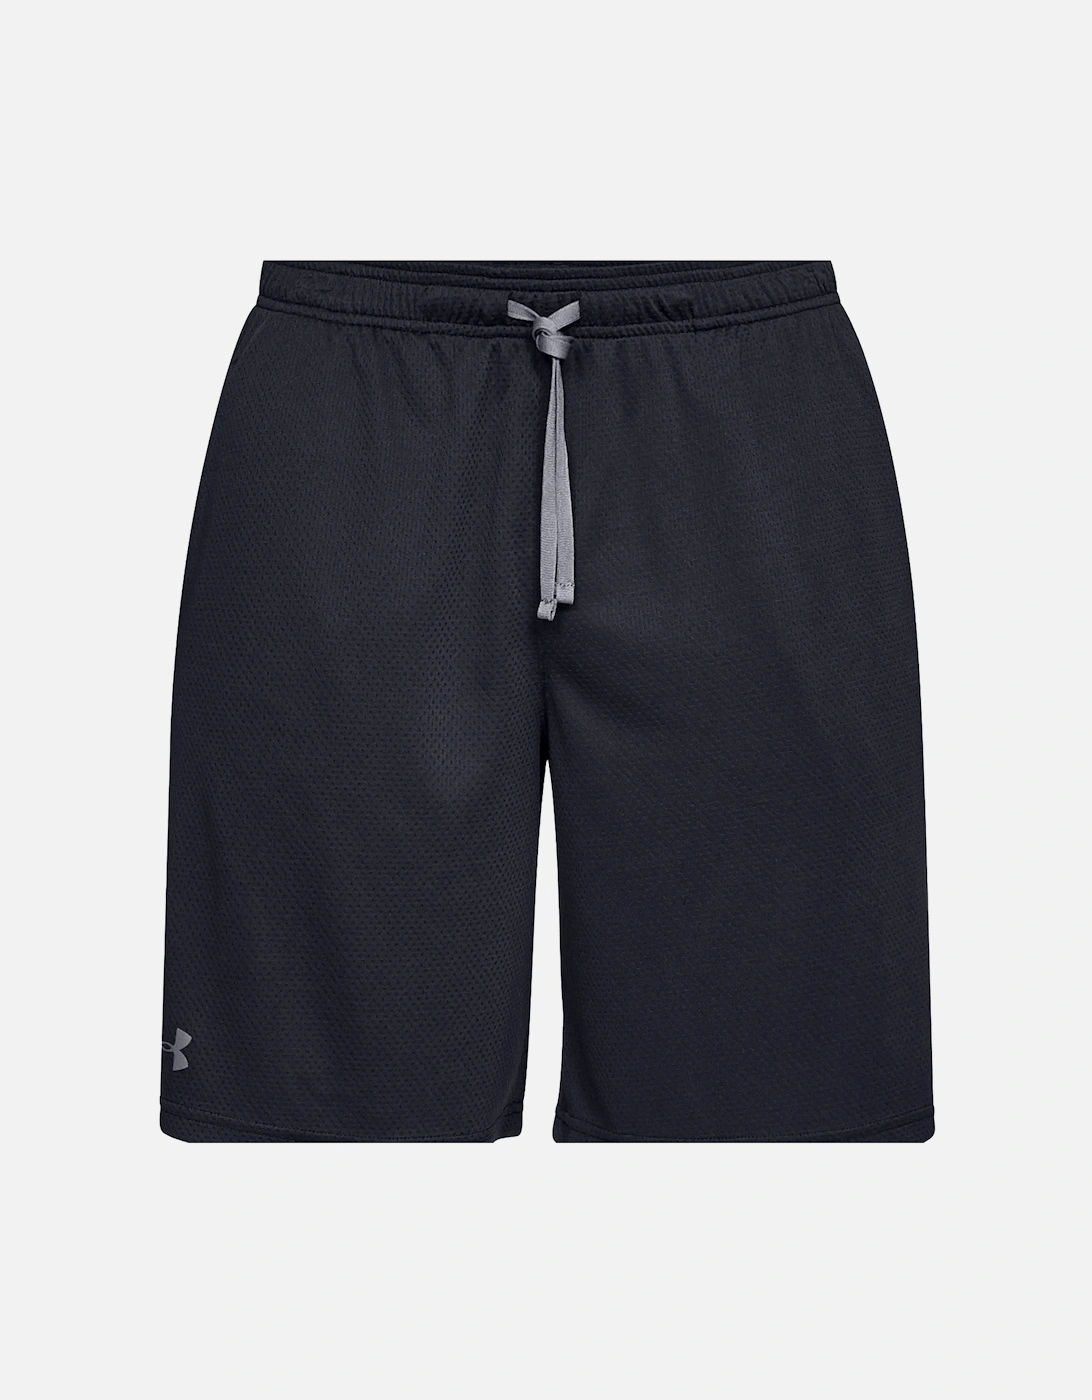 Mens Tech Mesh Shorts (Black), 7 of 6